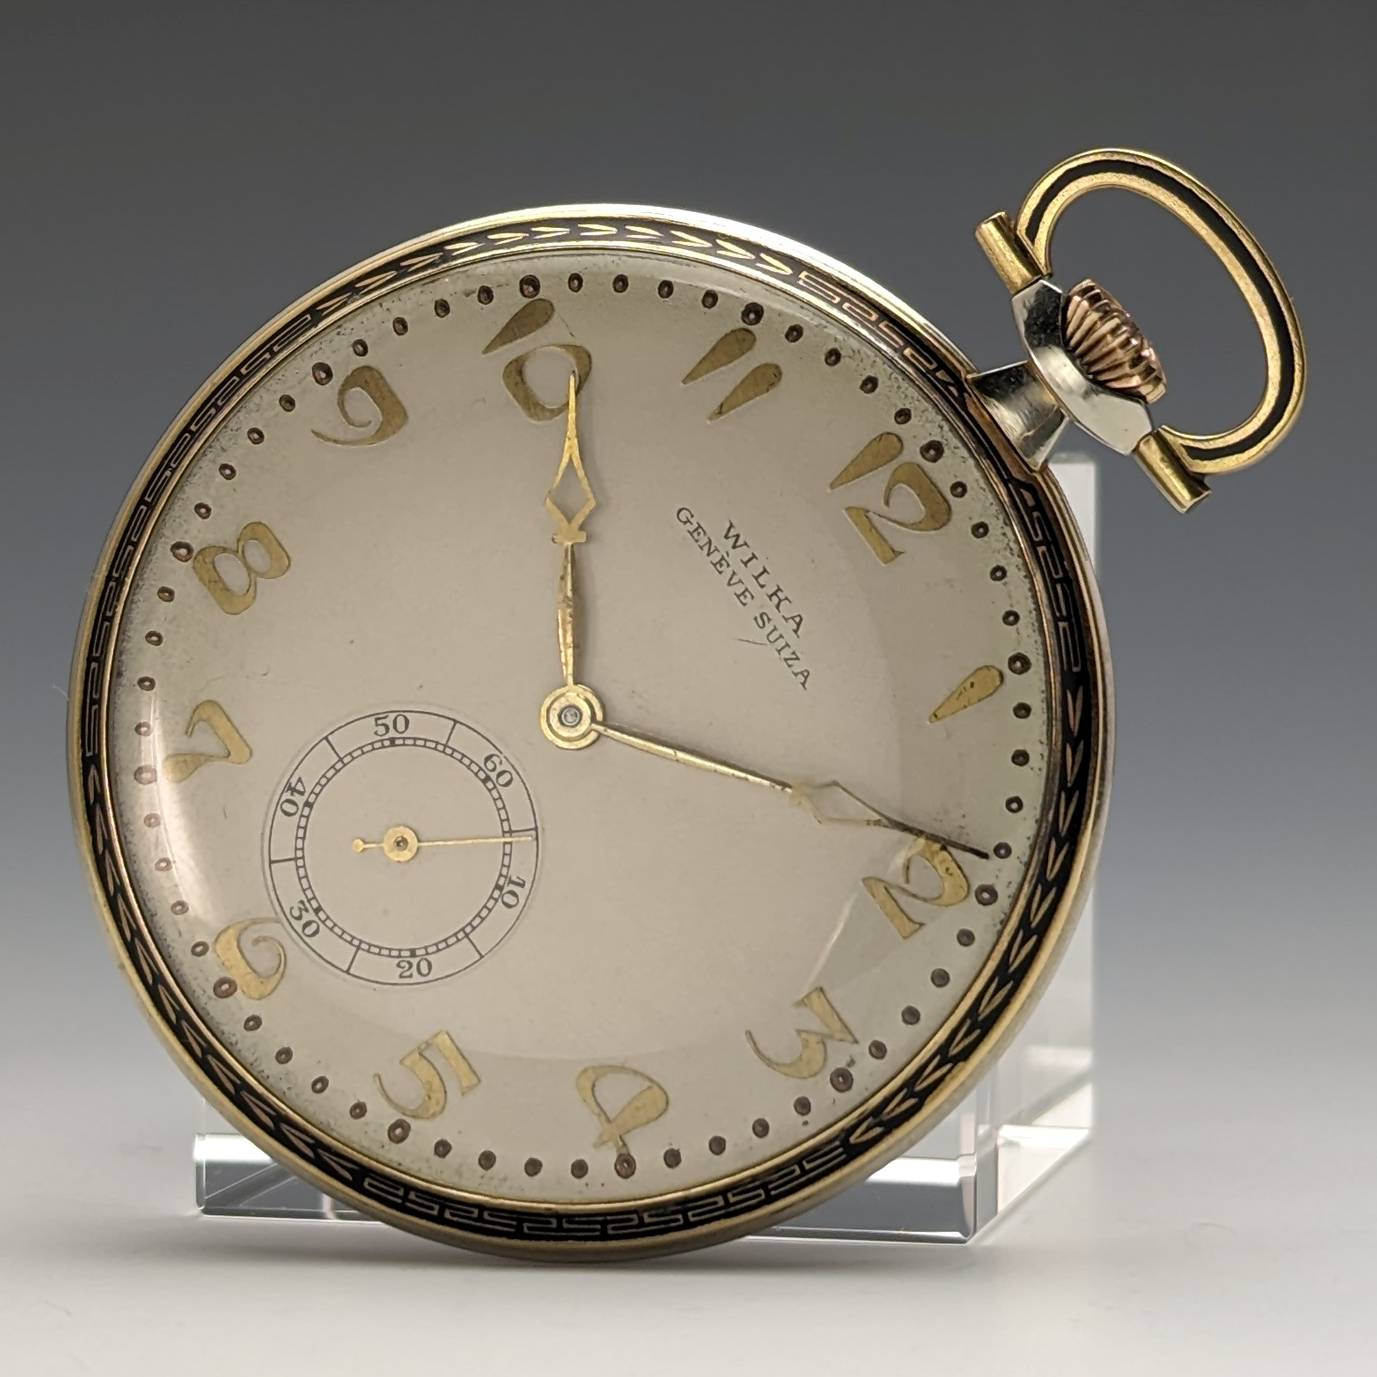 ヴィンテージ 懐中時計 スイス製懐中時計手巻き式時計